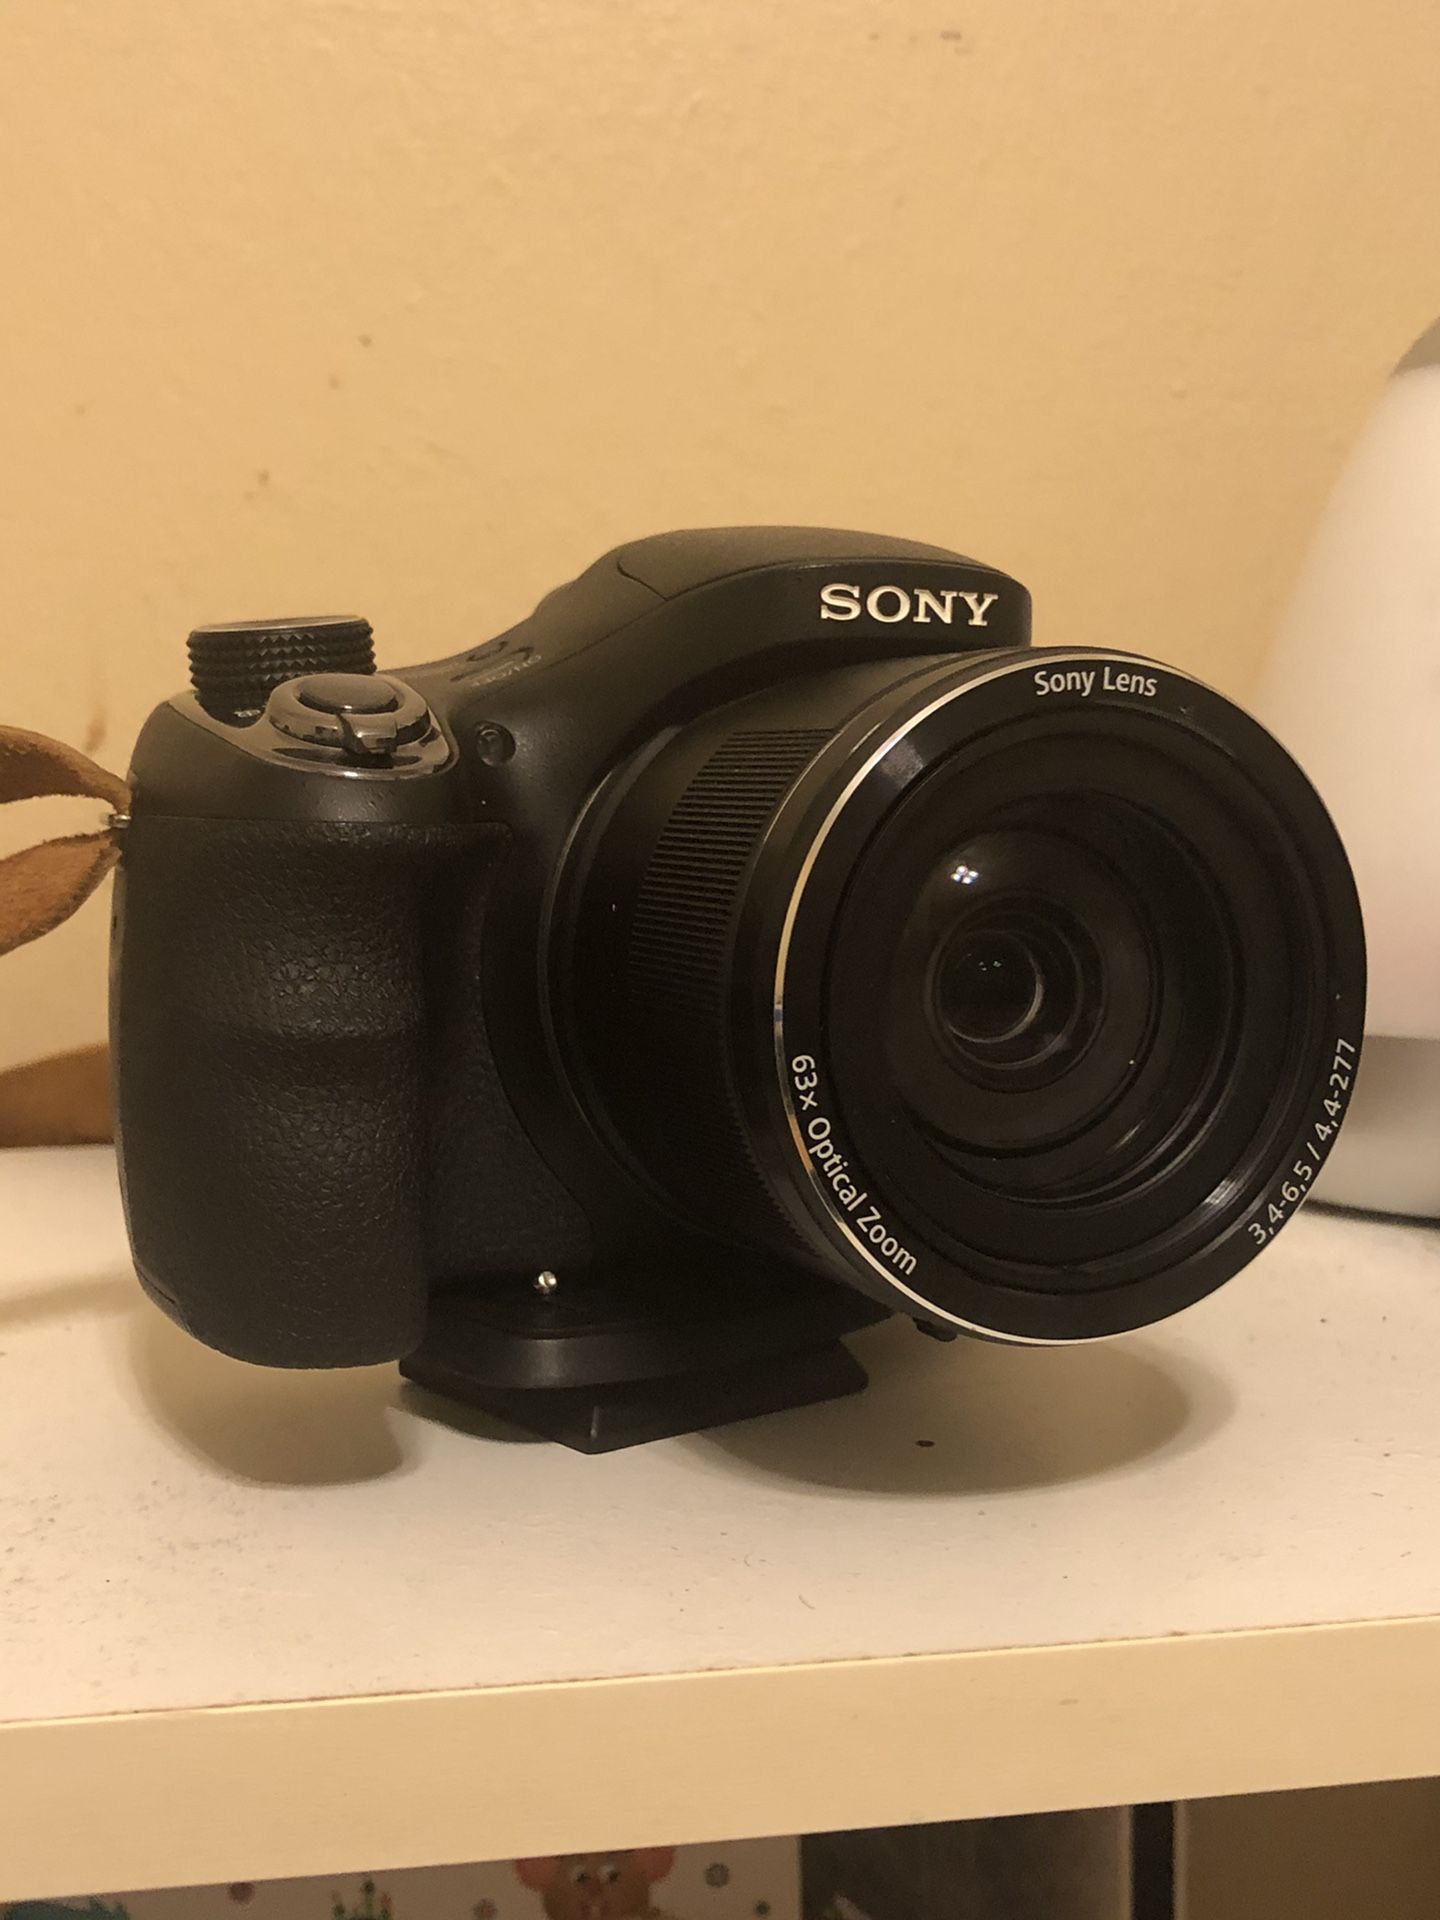 Sony 63x Optical Zoom Cyber-shot Camera